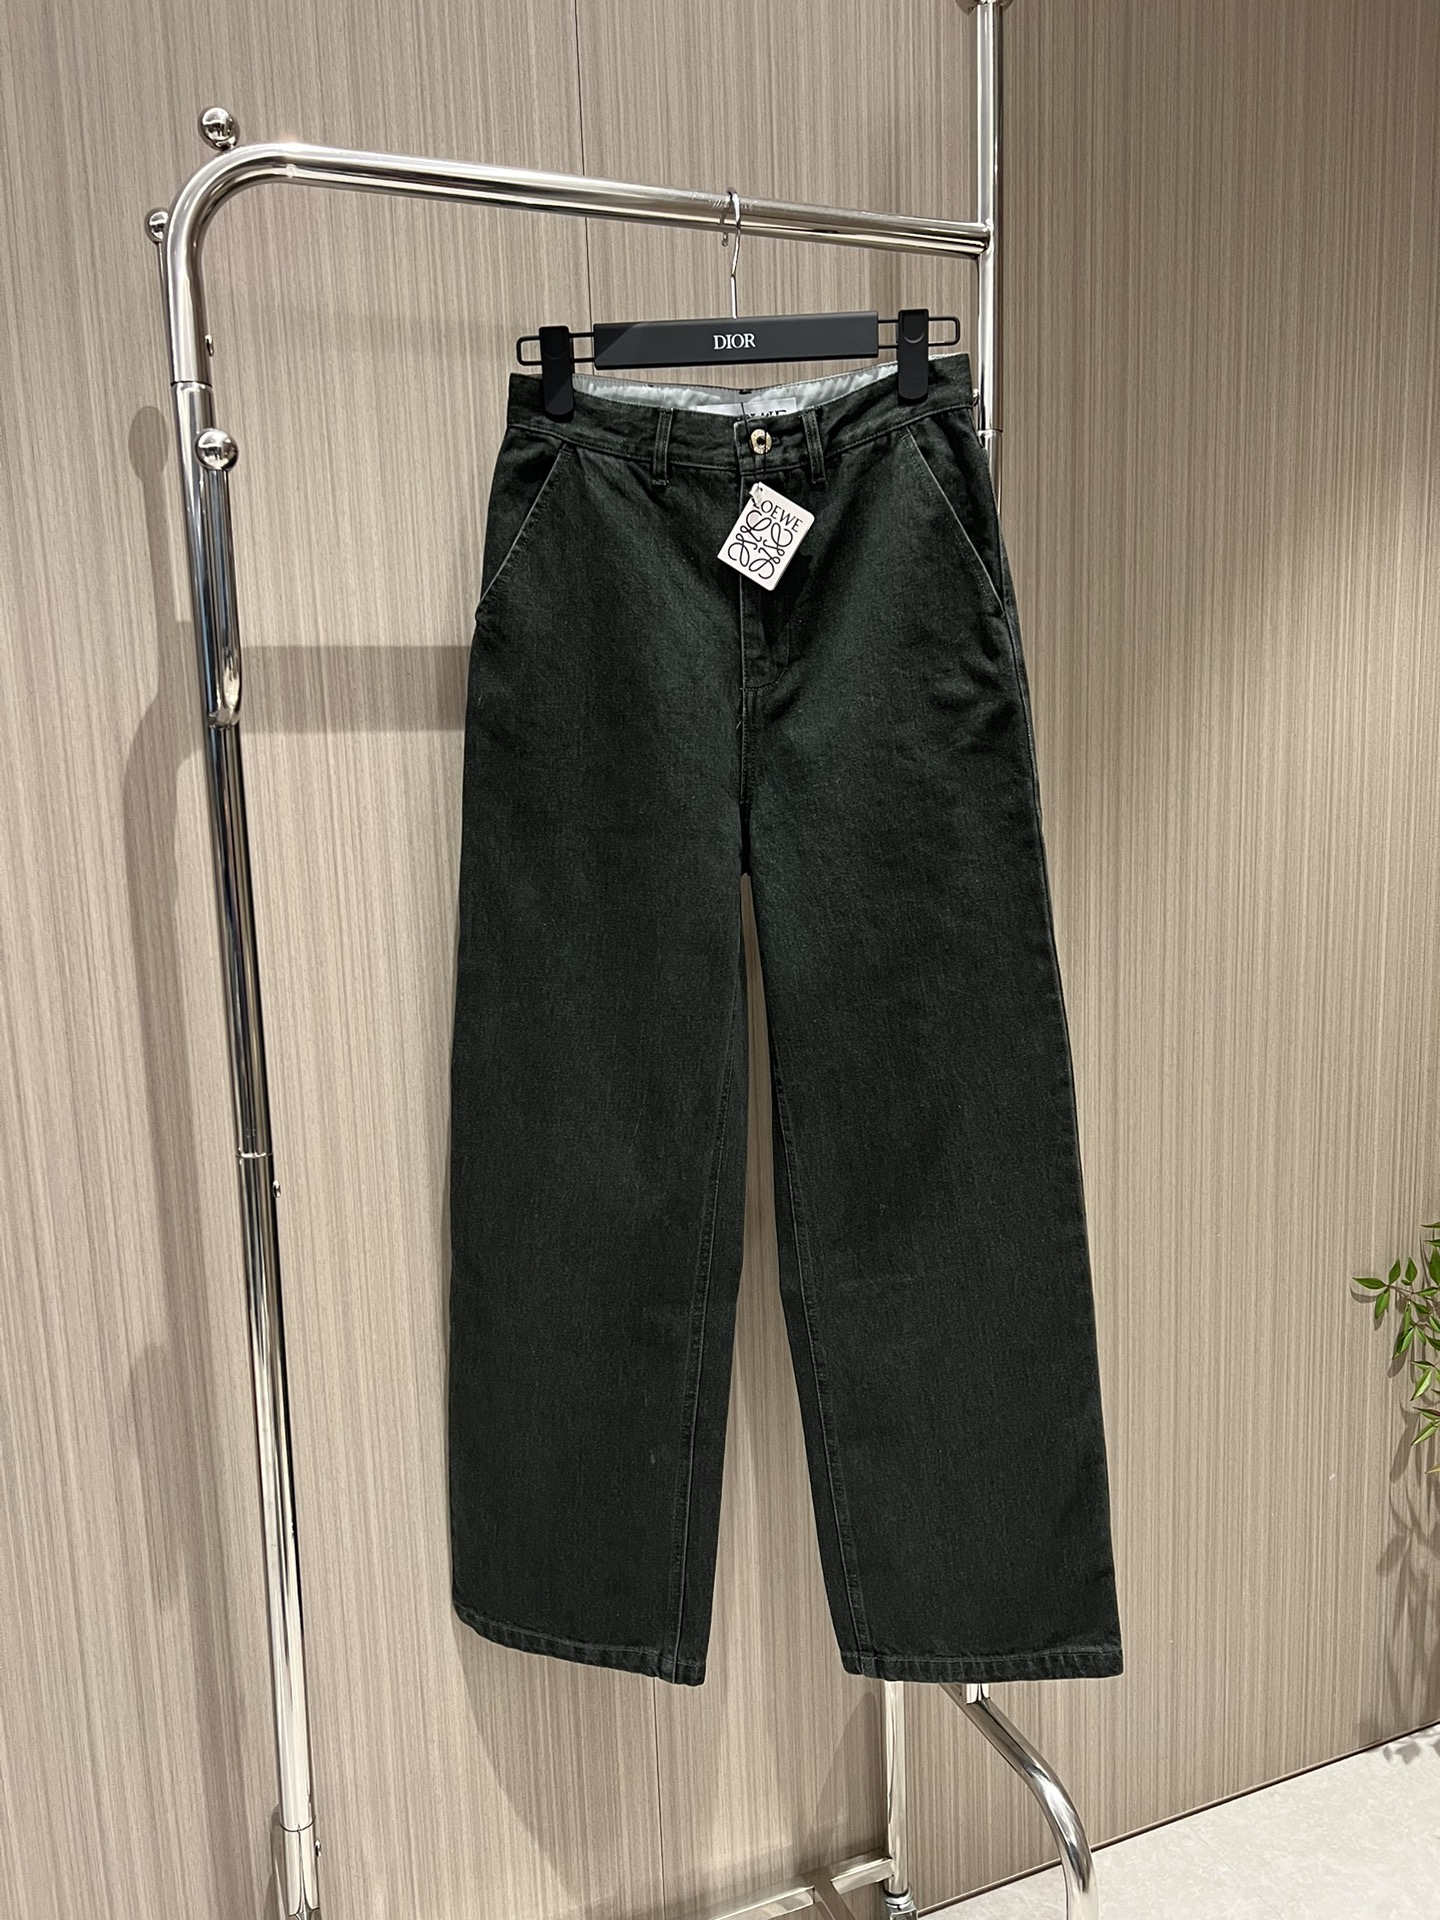 新款Loewe刺绣熊猫直筒牛仔裤 墨绿色洗水很特别 修身显瘦休闲百搭 SML 82eldydezsdqw